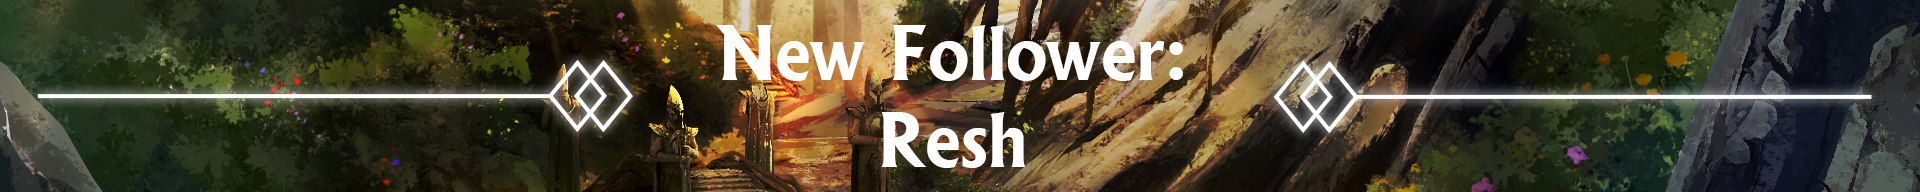 New Follower: Resh